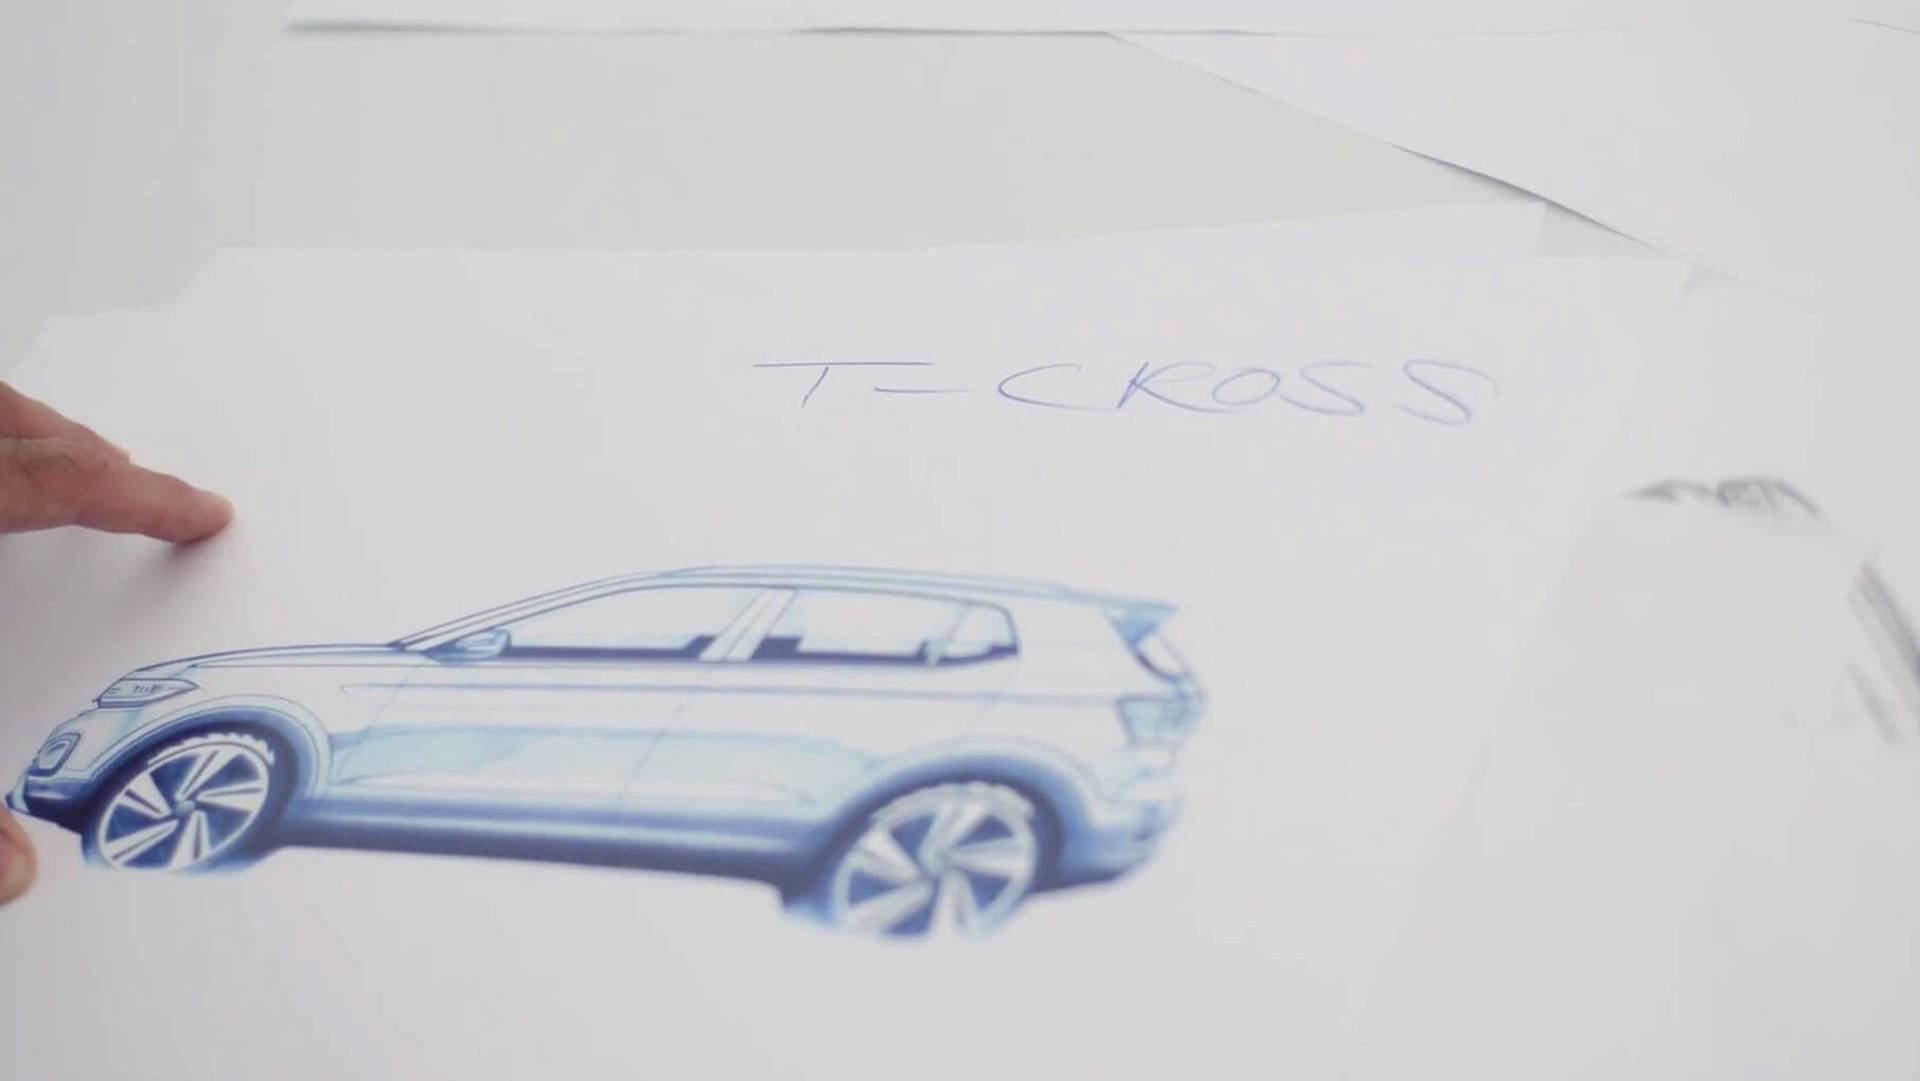 Volkswagen T-Cross na prvních náčrtech